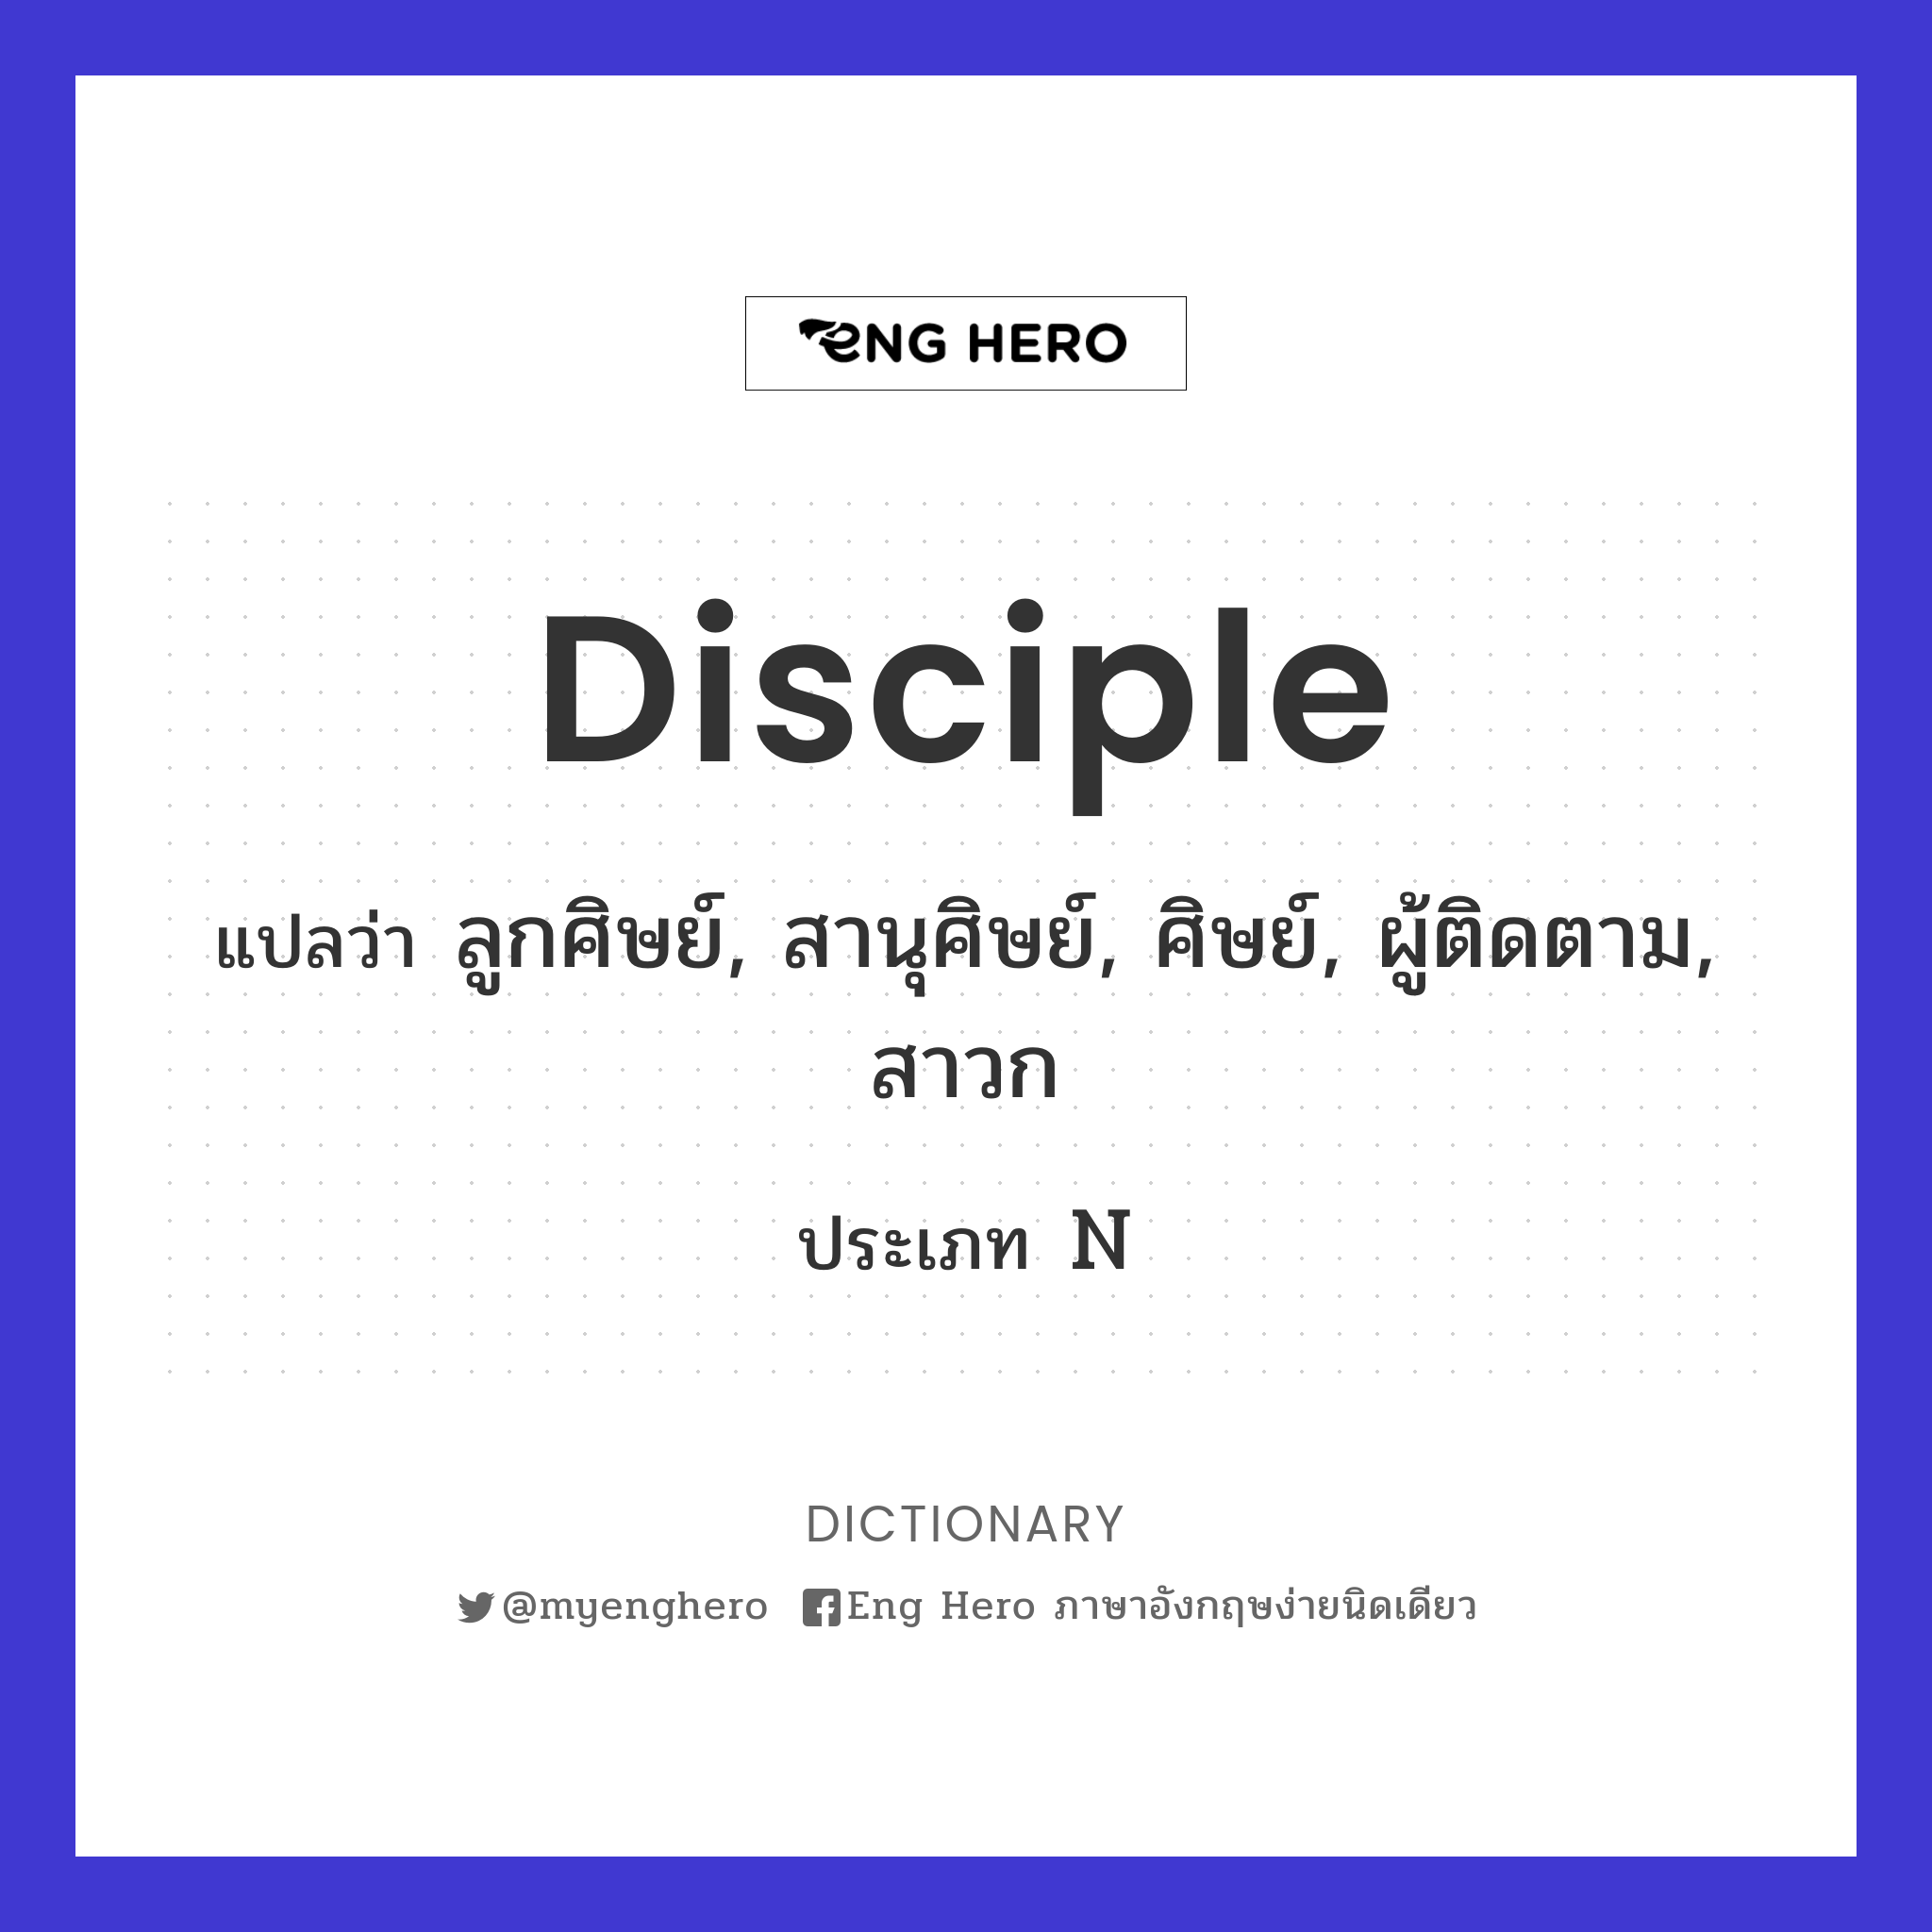 disciple